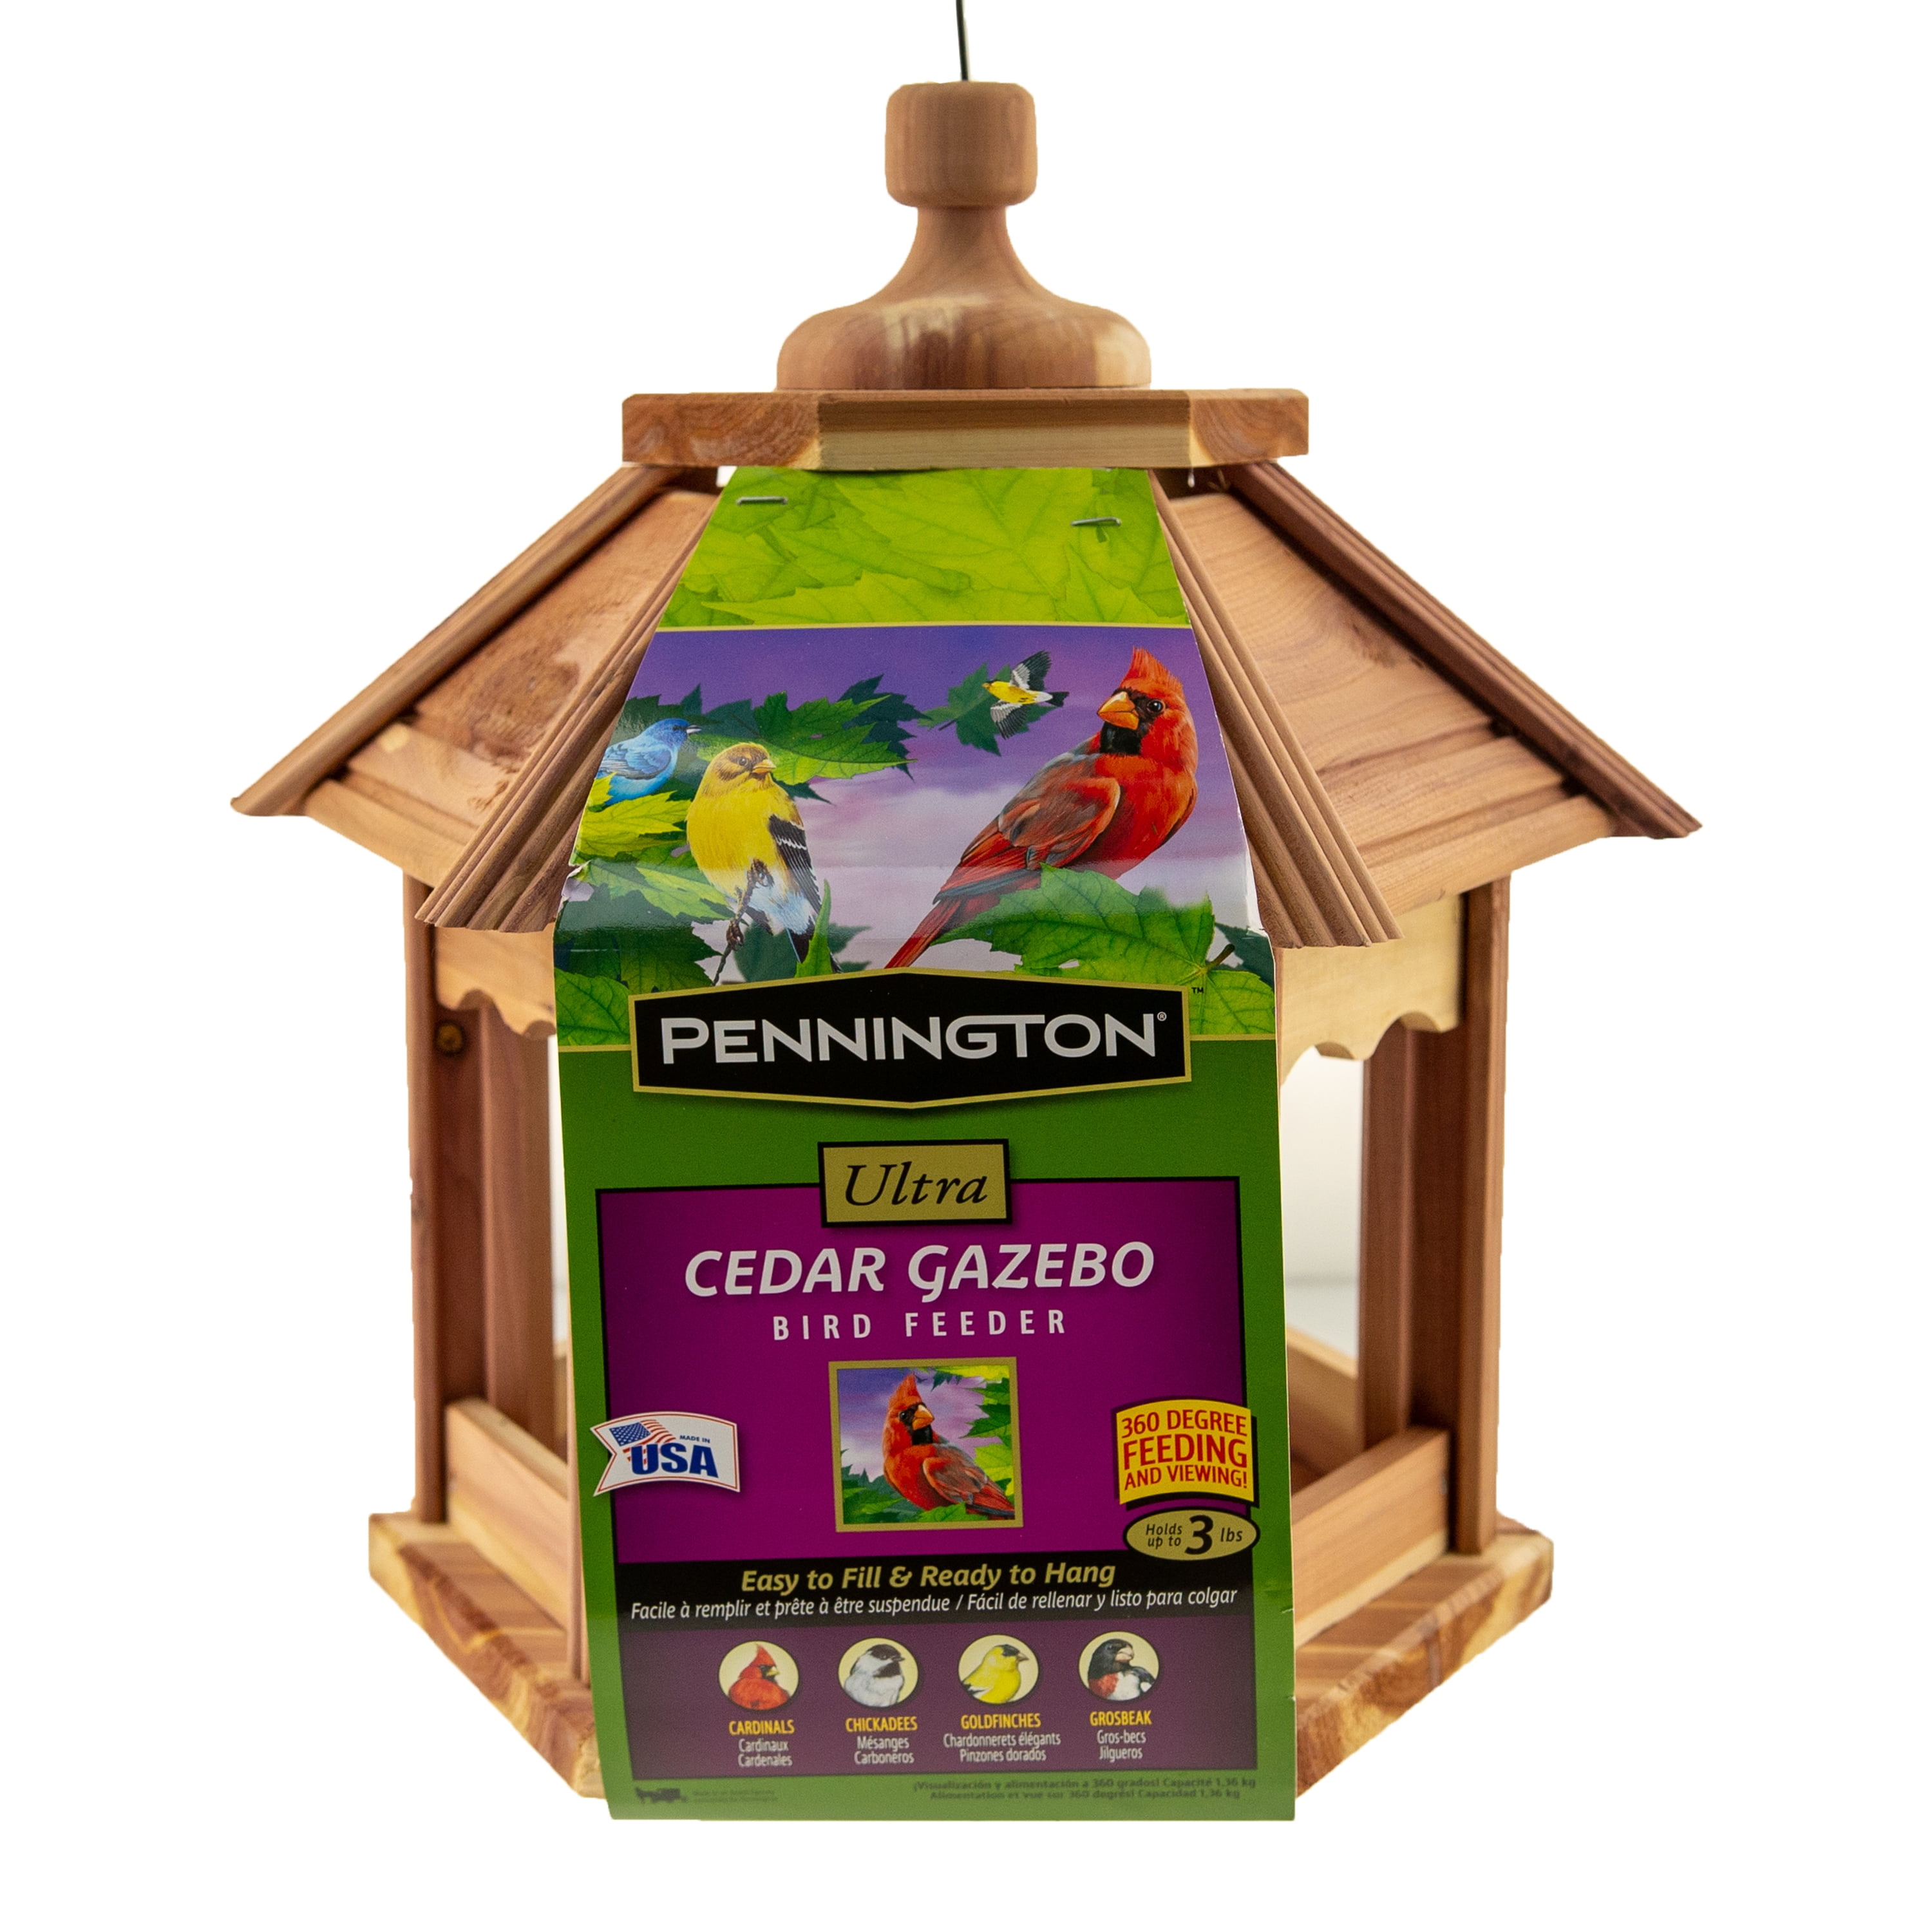 Pennington Cedar Gazebo Wild Bird Feeder 3 lb Hopper Capacity 